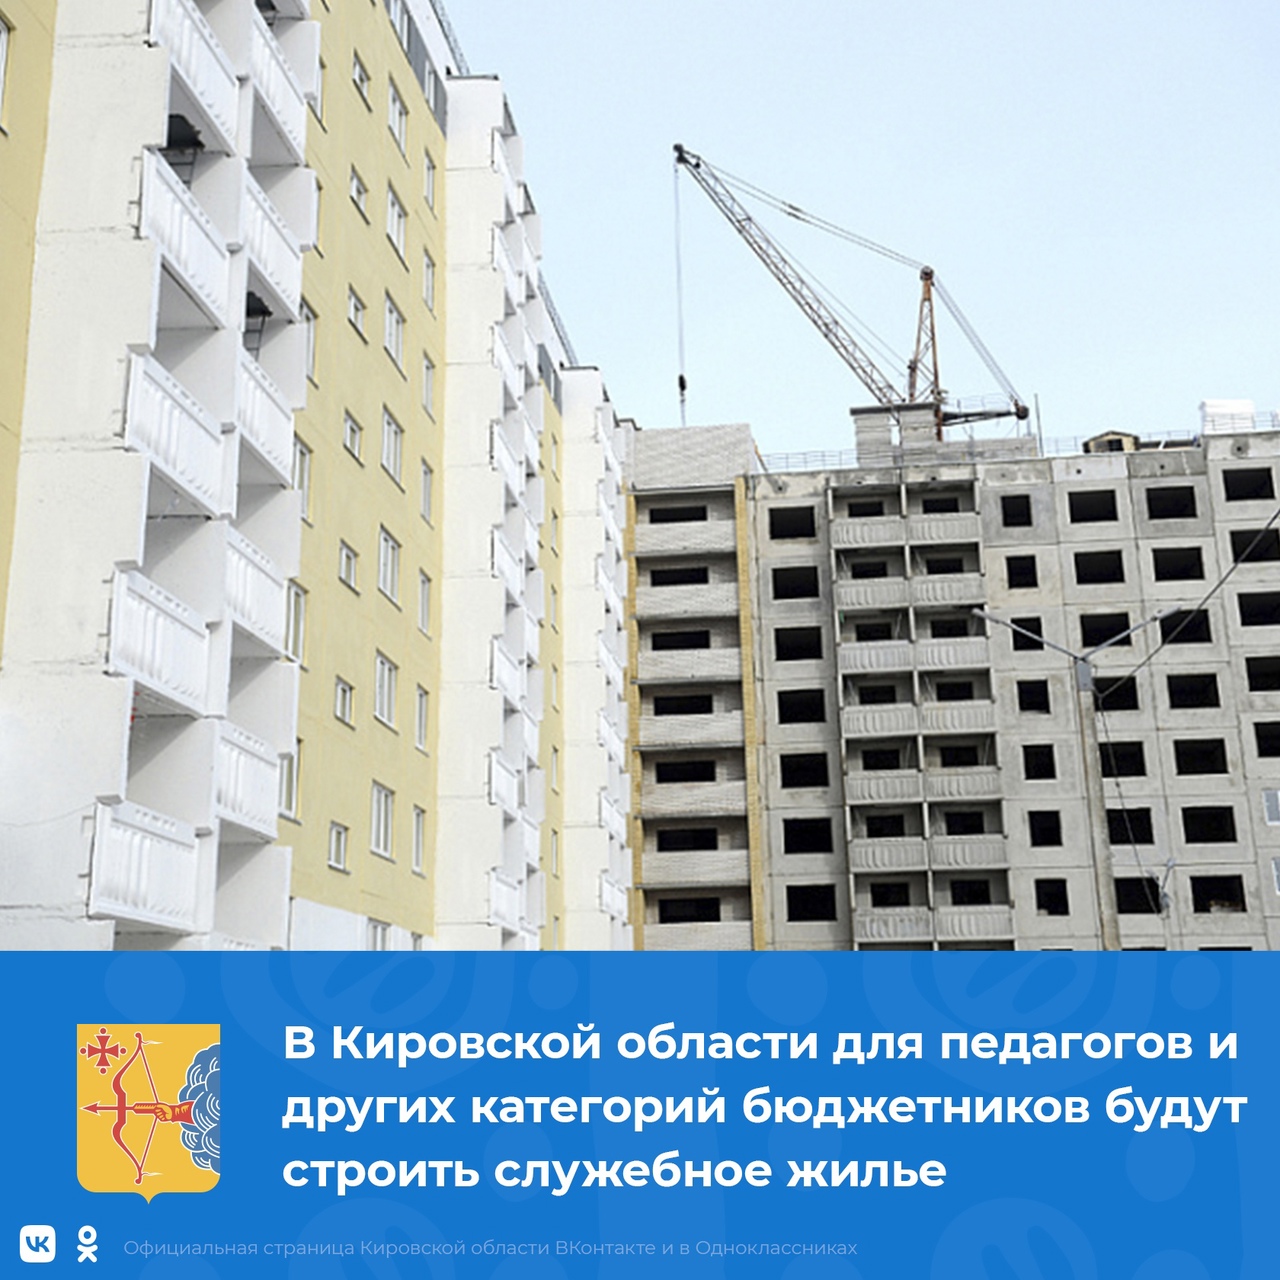 В Кировской области для педагогов и других категорий бюджетников будут строить служебное жилье.